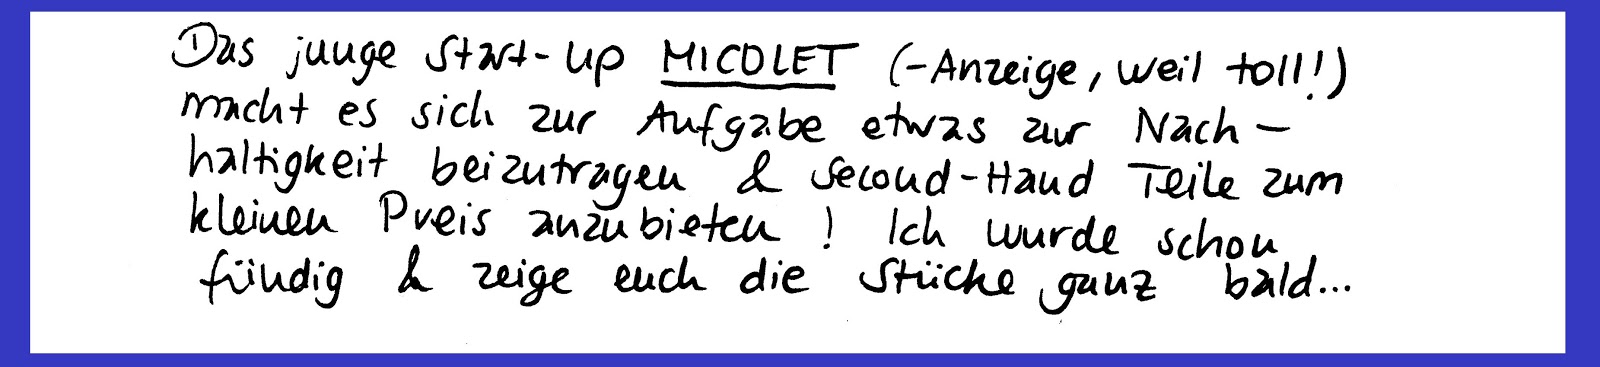 https://www.micolet.de/